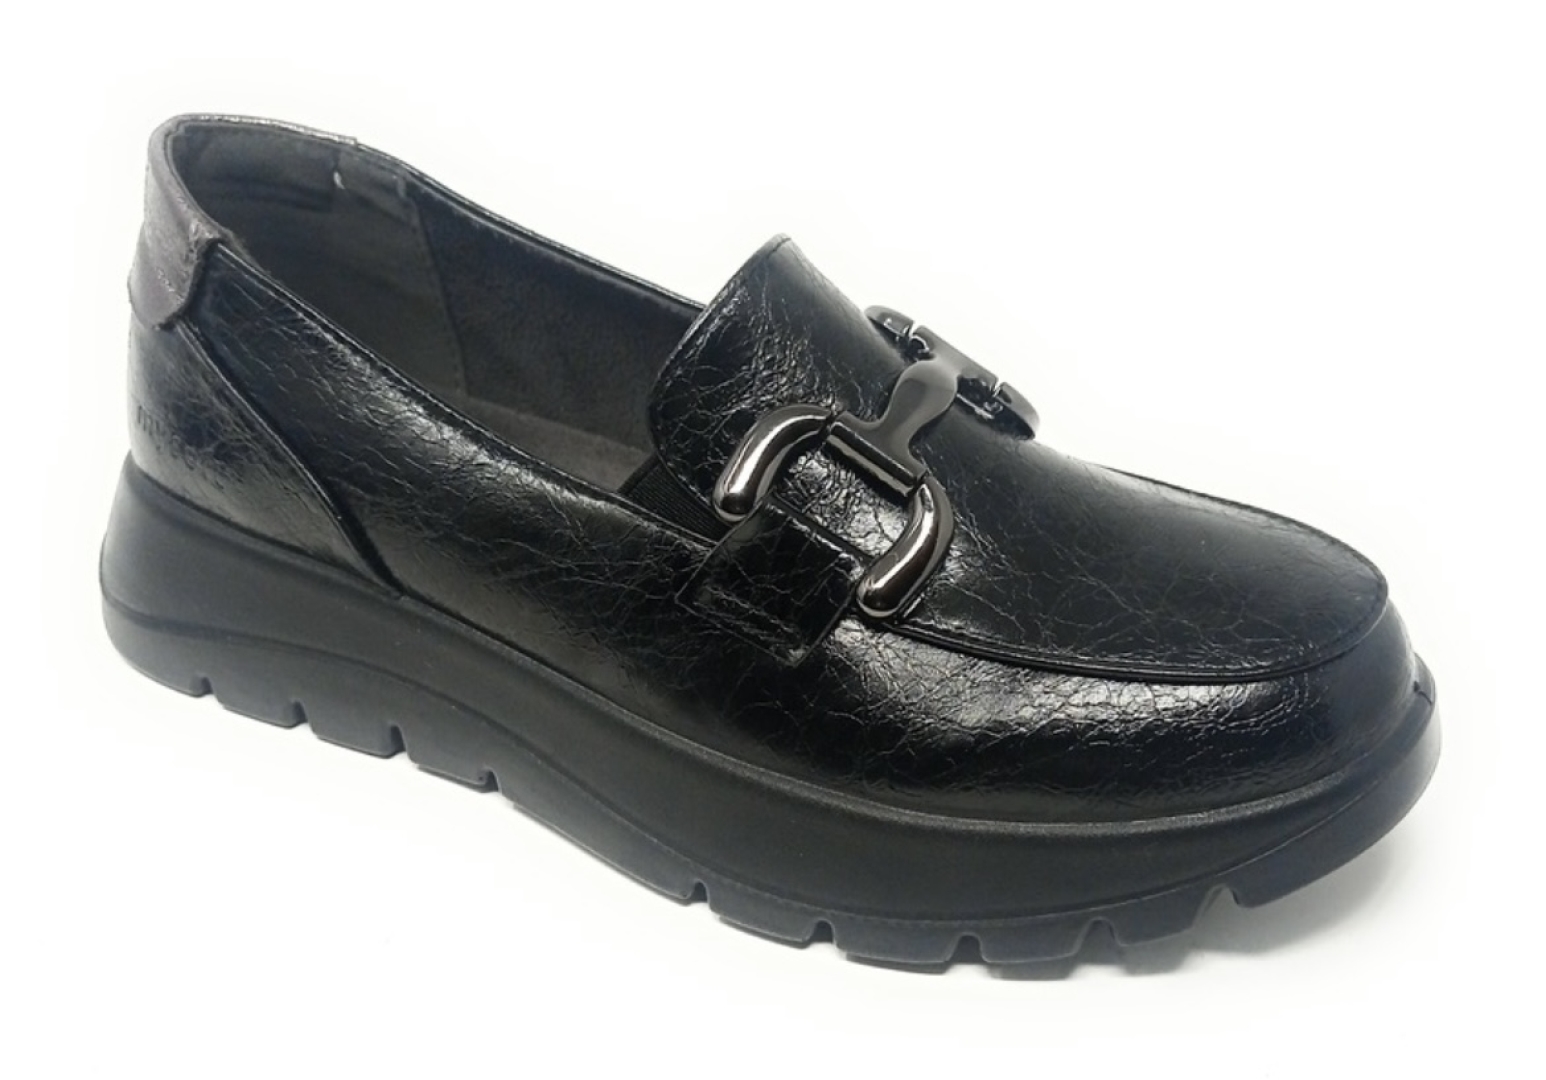 Zapato mujer tipo mocasín en charol negro de Mysoft 23M623. M-166